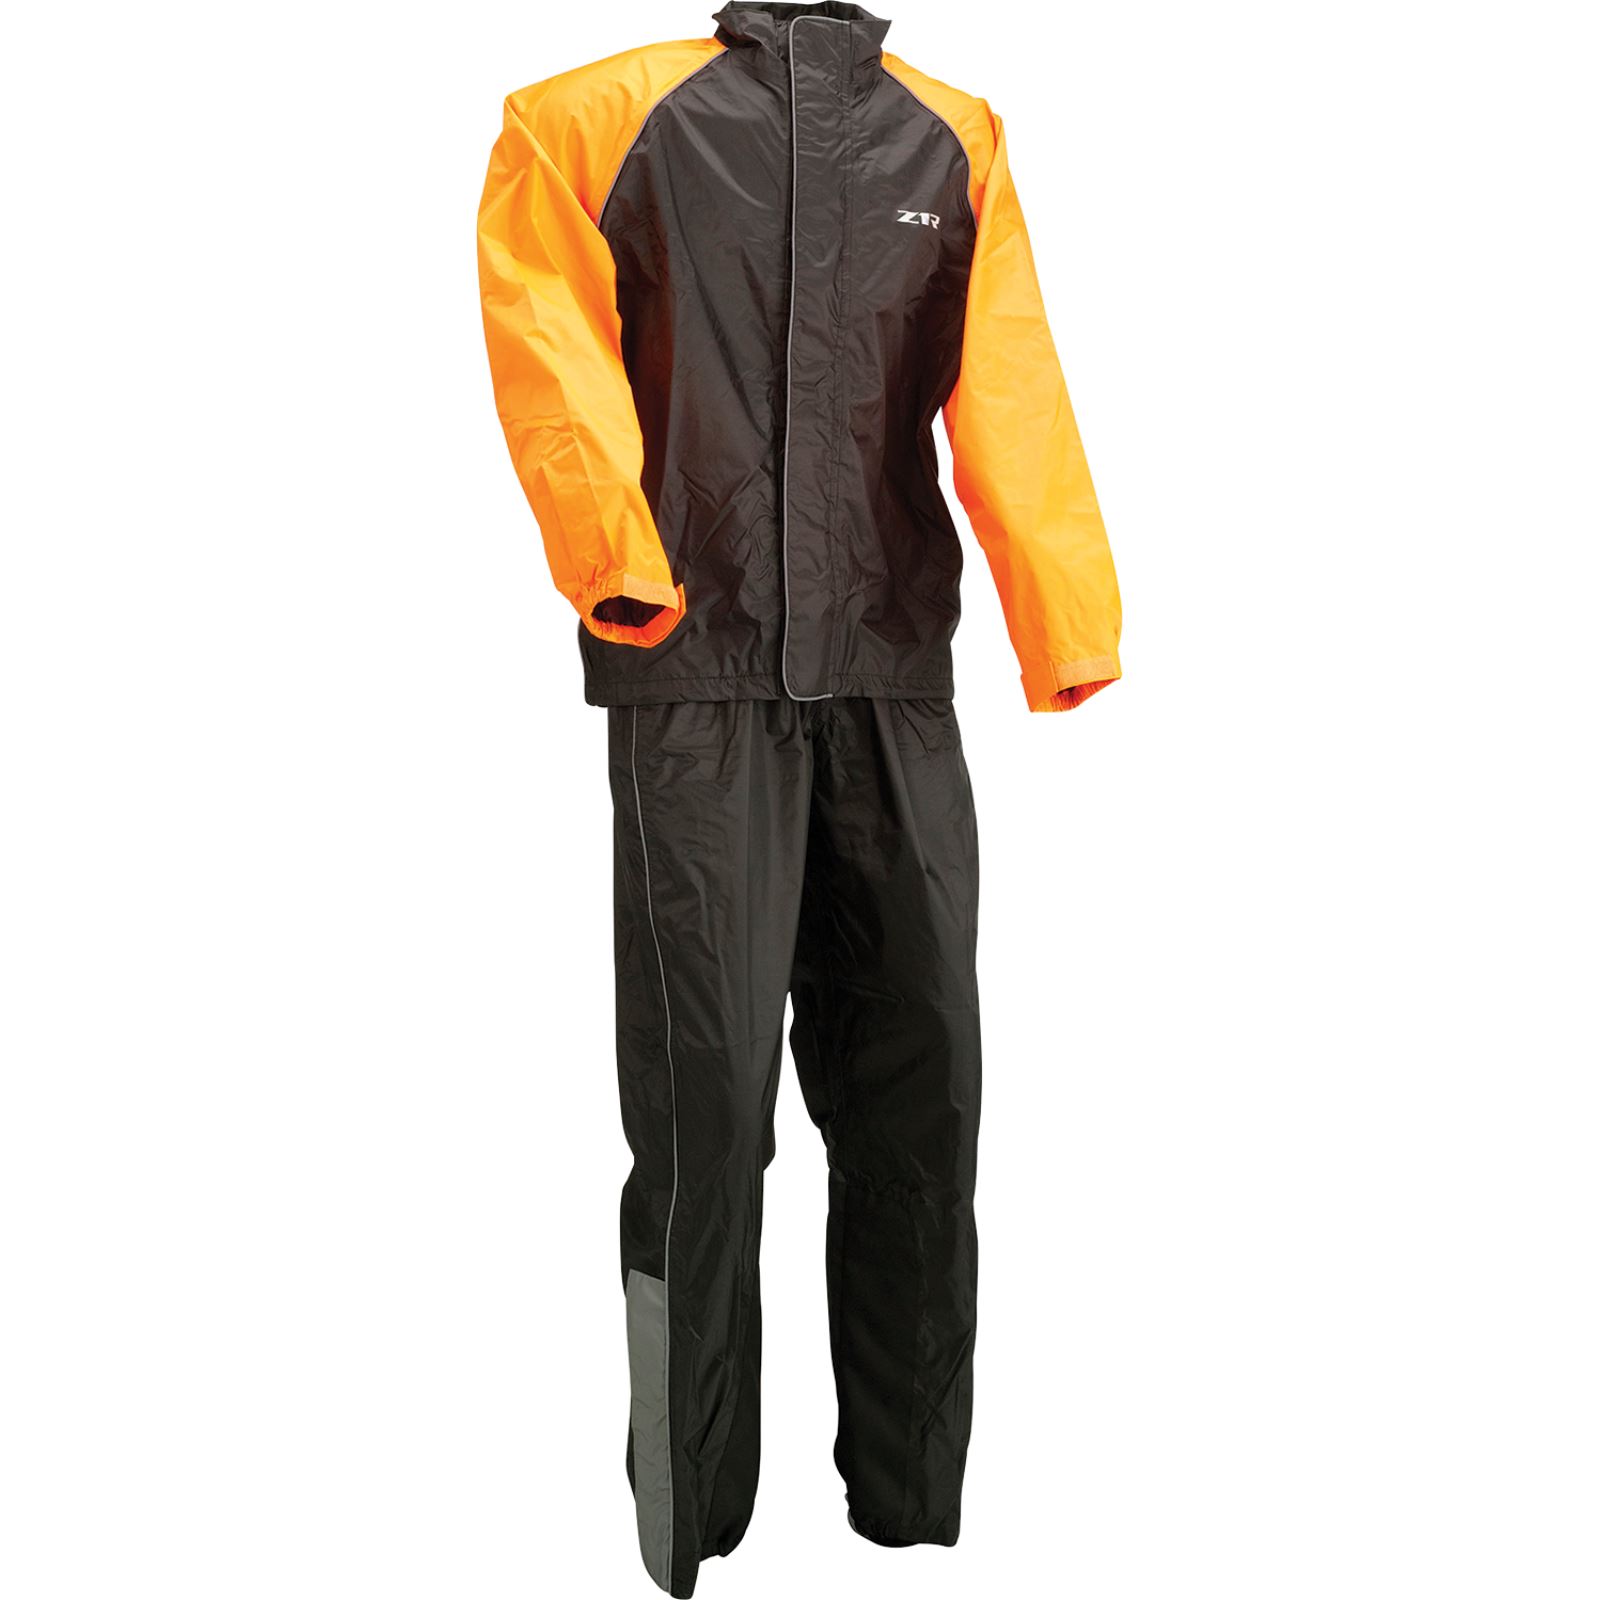 Z1R 2-Piece Rainsuit - Black/Orange - 2XL